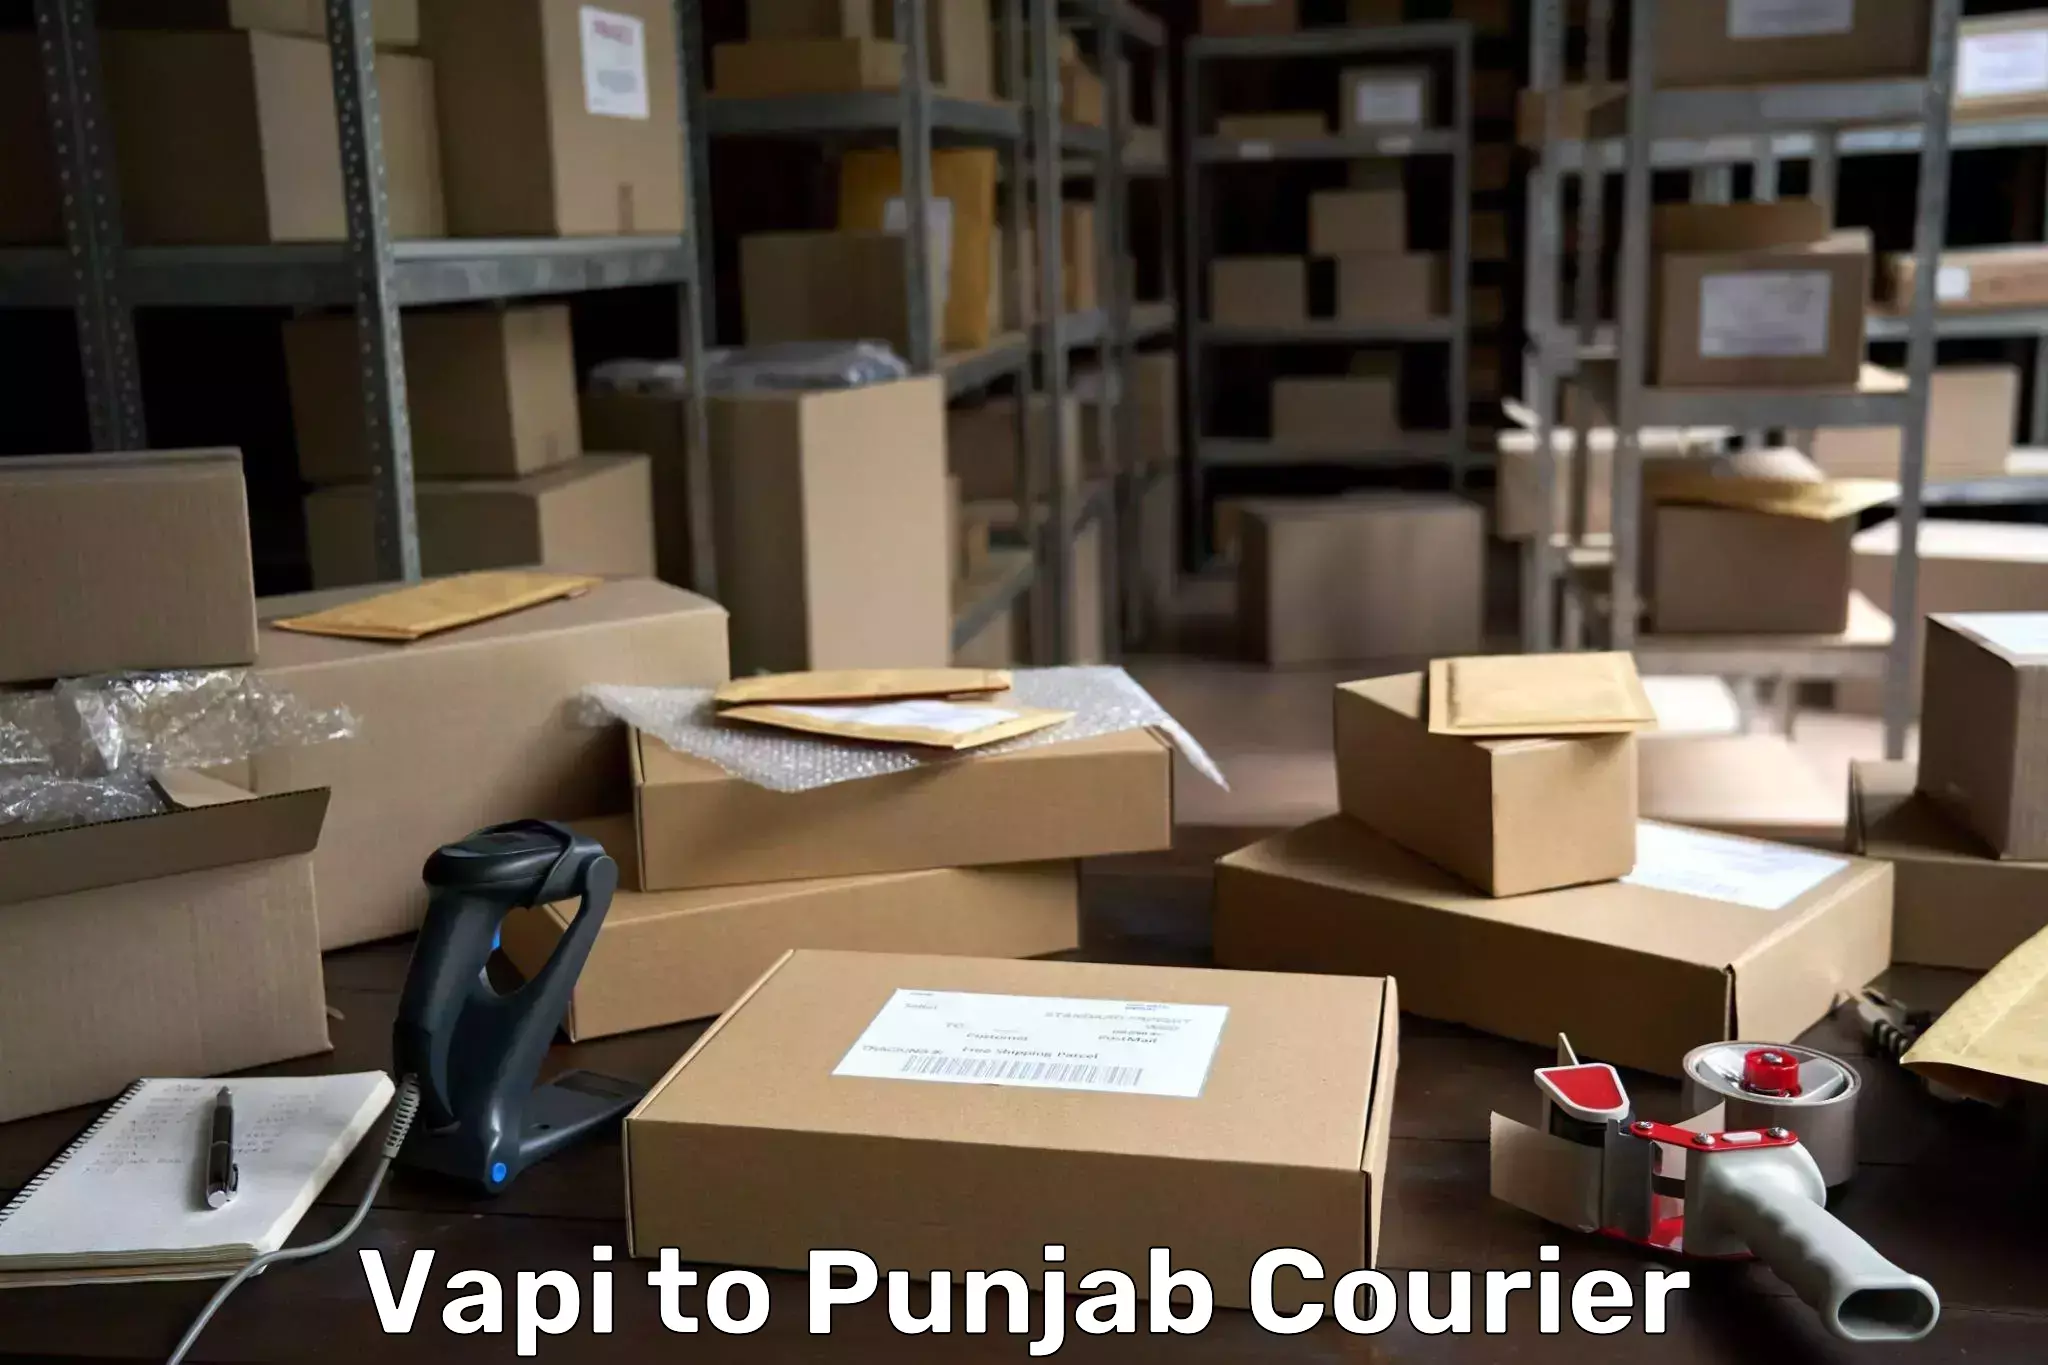 Next-generation courier services Vapi to IIT Ropar